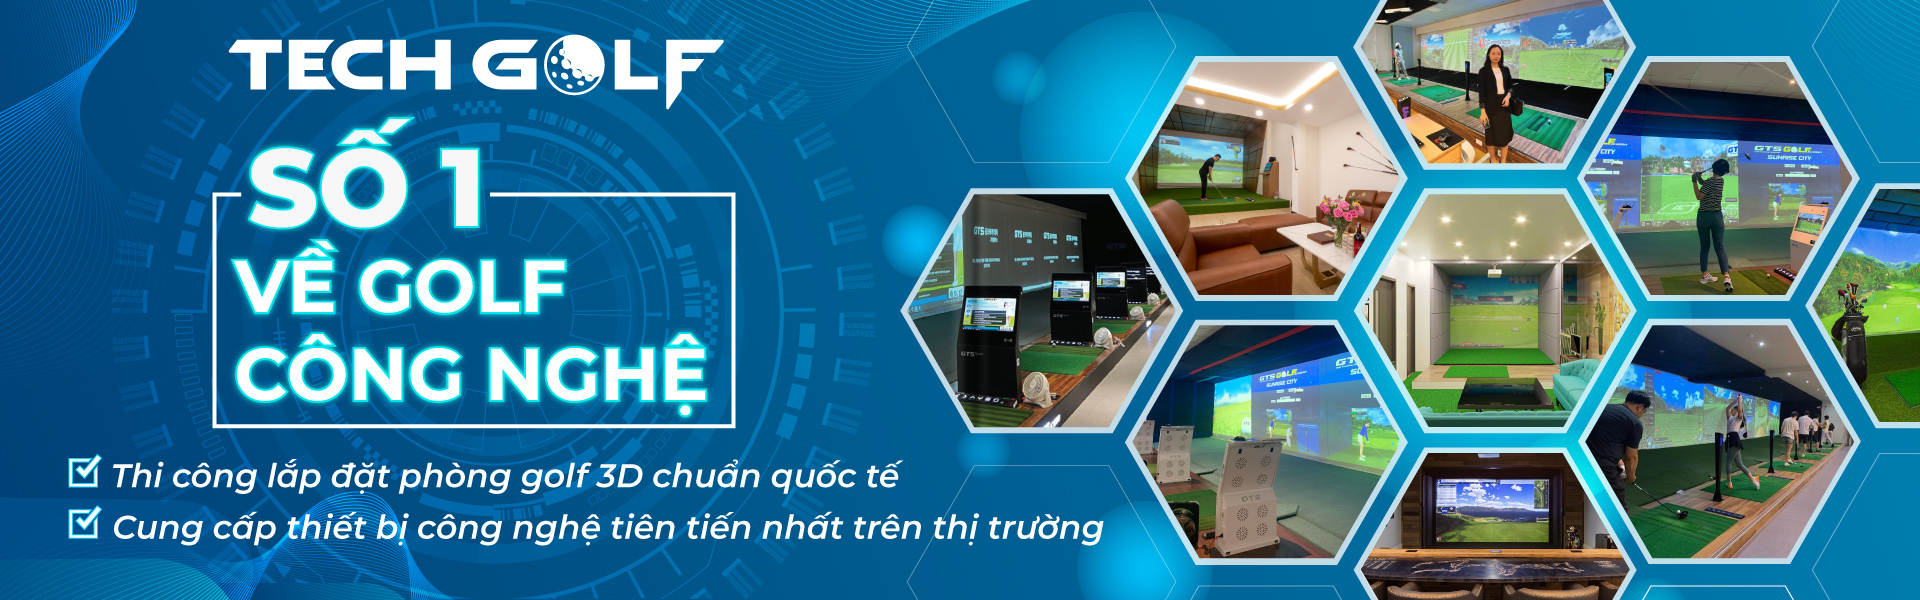 Techgolf tự hào là đơn vị số 1 về golf công nghệ tại Việt Nam